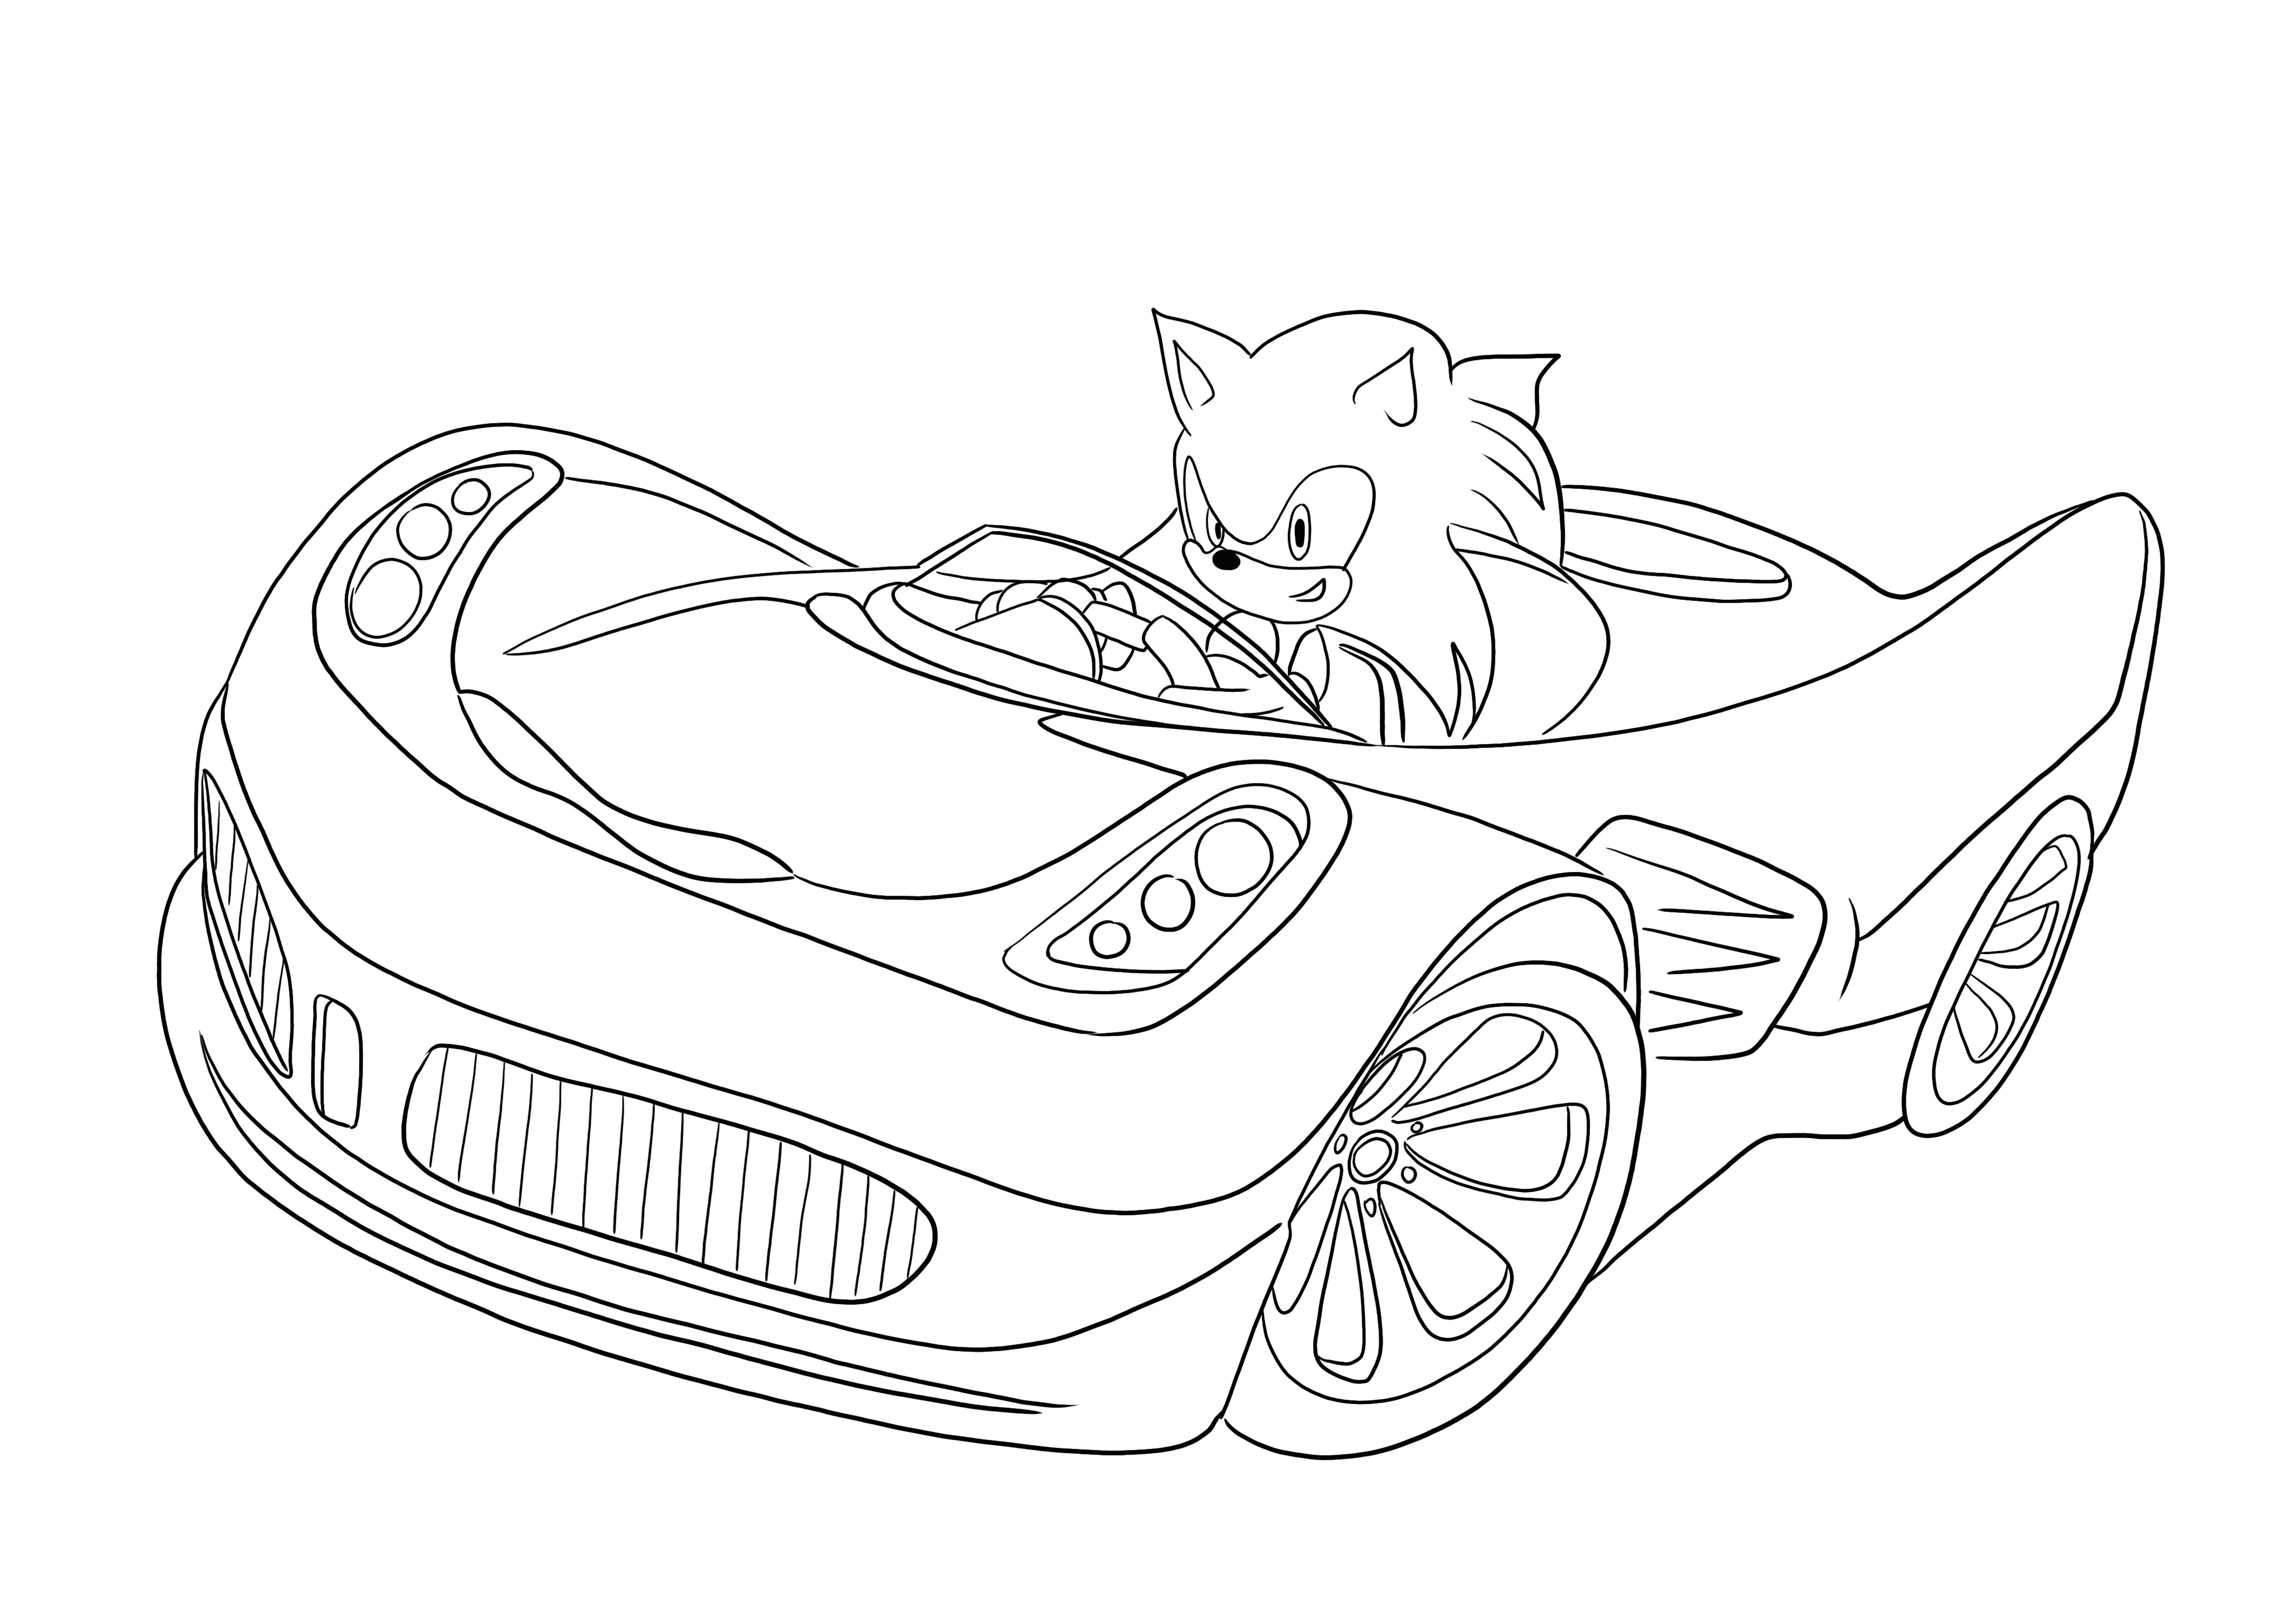 Darmowa kolorowanka przedstawiająca Sonic jadącego samochodem do wydrukowania i wykorzystania z dziećmi